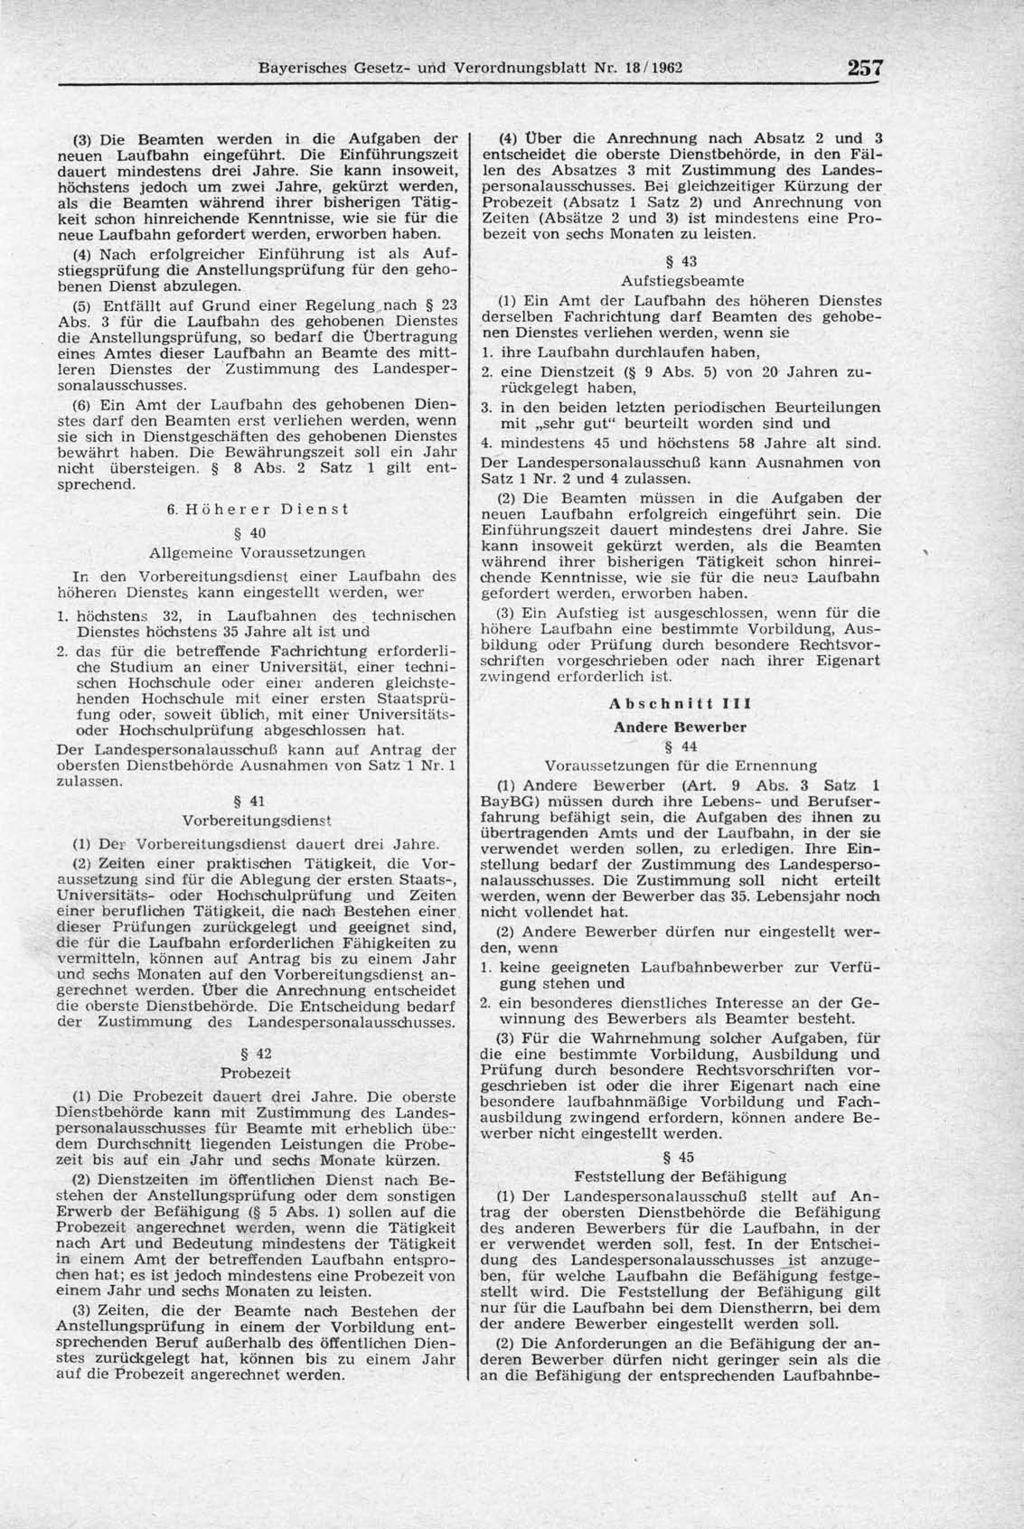 Bayerisches Gesetz- und Verordnungsblatt Nr. 18/1962 257 (3) Die Beamten werden in die Aufgaben der neuen Laufbahn eingeführt. Die Einführungszeit dauert mindestens drei Jahre.